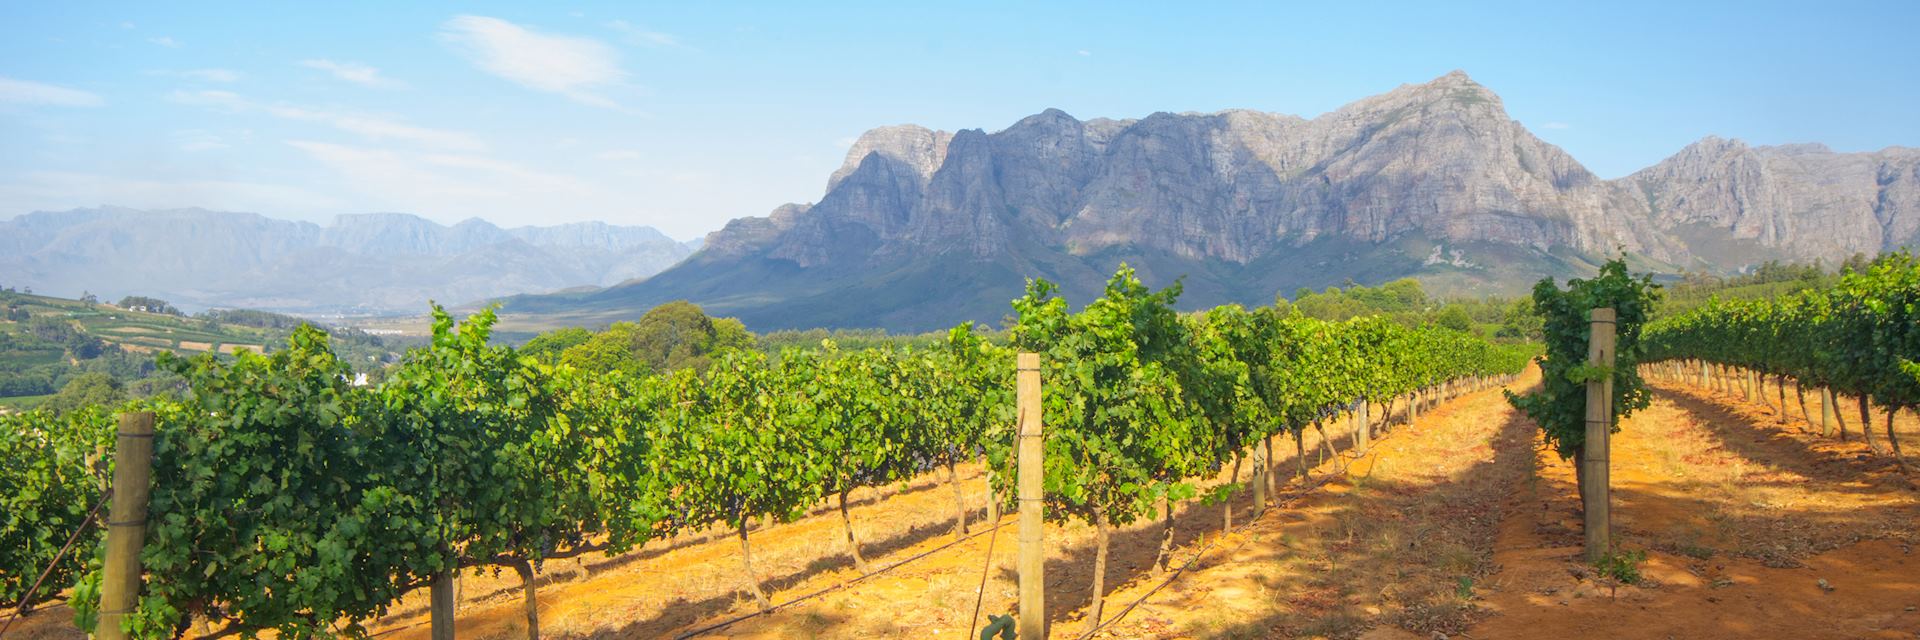 Vineyard in Stellenbosch